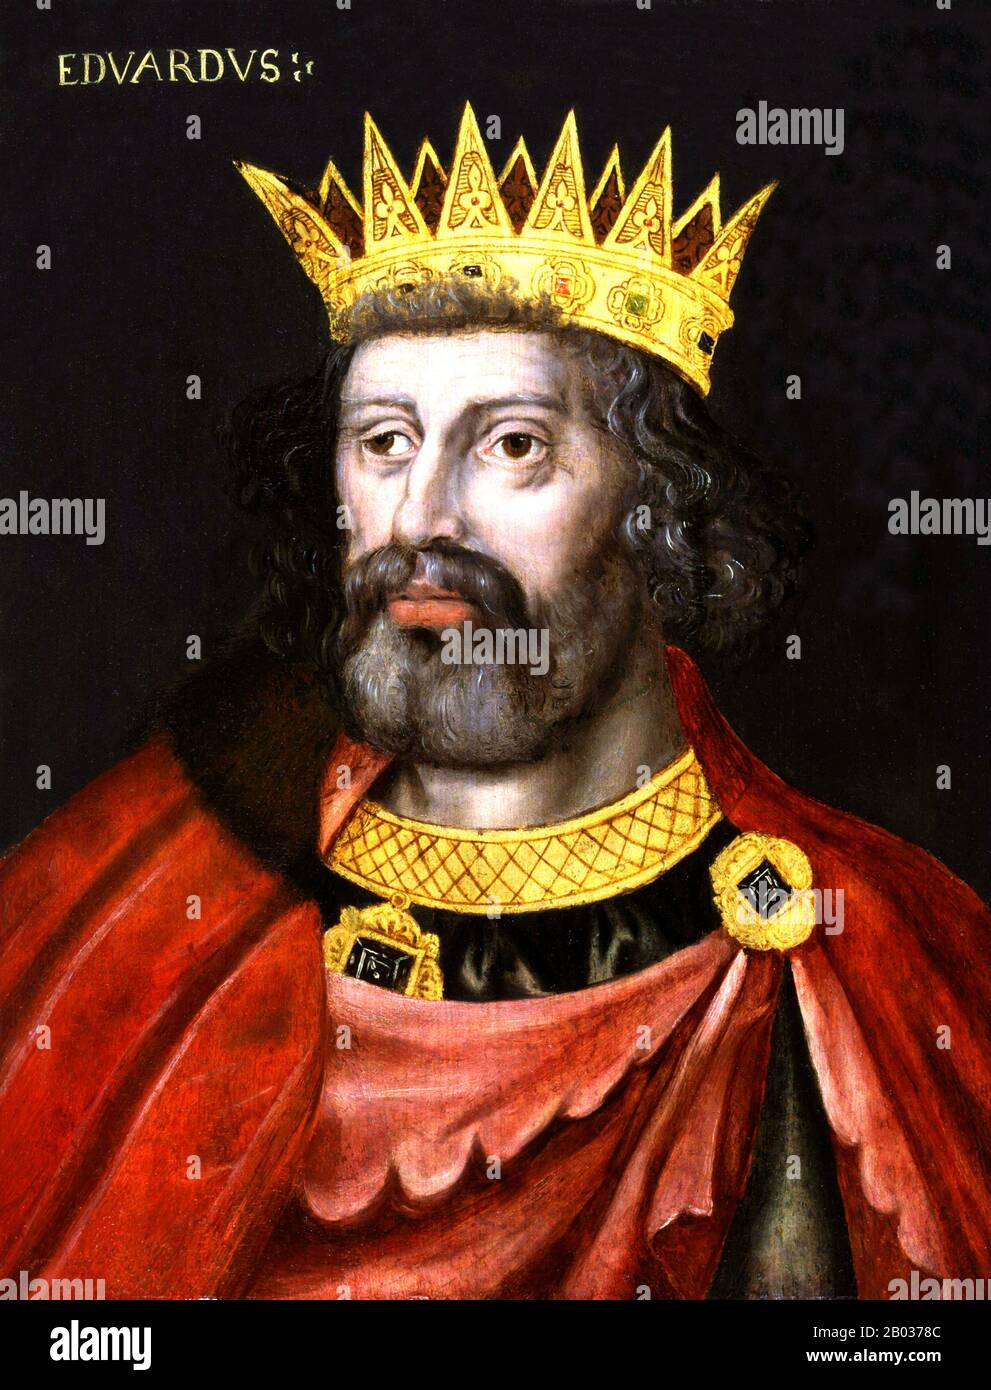 Edward I. (17./18. Juni 1239 - 7. Juli 1307), auch bekannt als Edward Longshanks und der Hammer der Schotten (lat.: Malleus Scotorum), war von 1272 bis 1307 König von England. Stockfoto